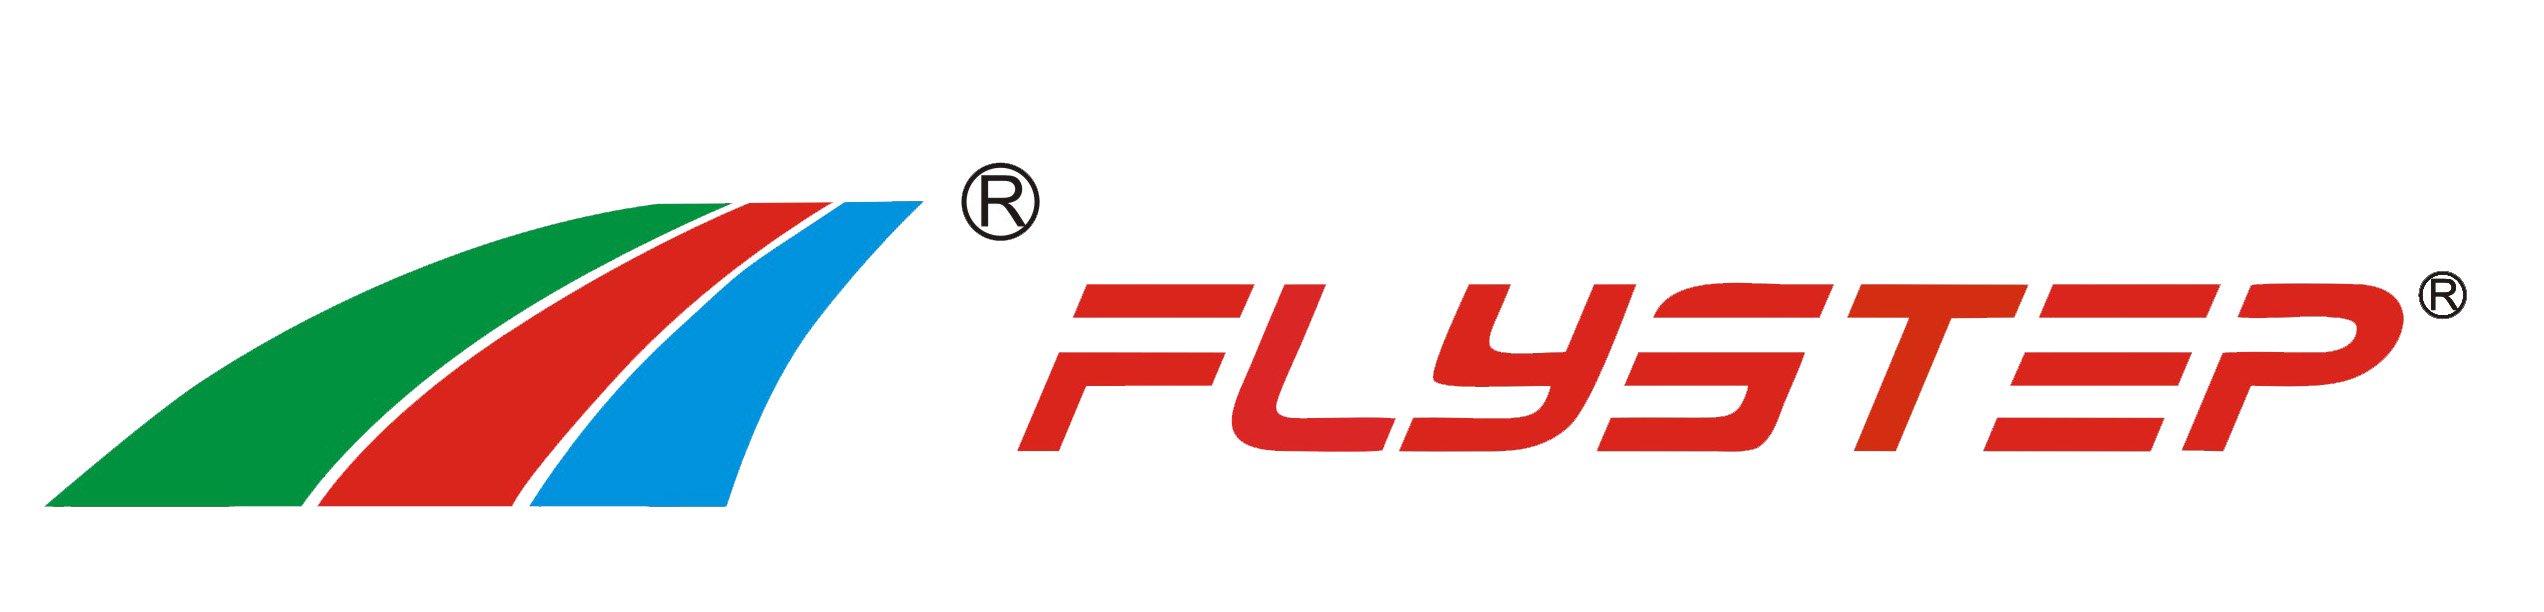 FLYSTEP Array image33